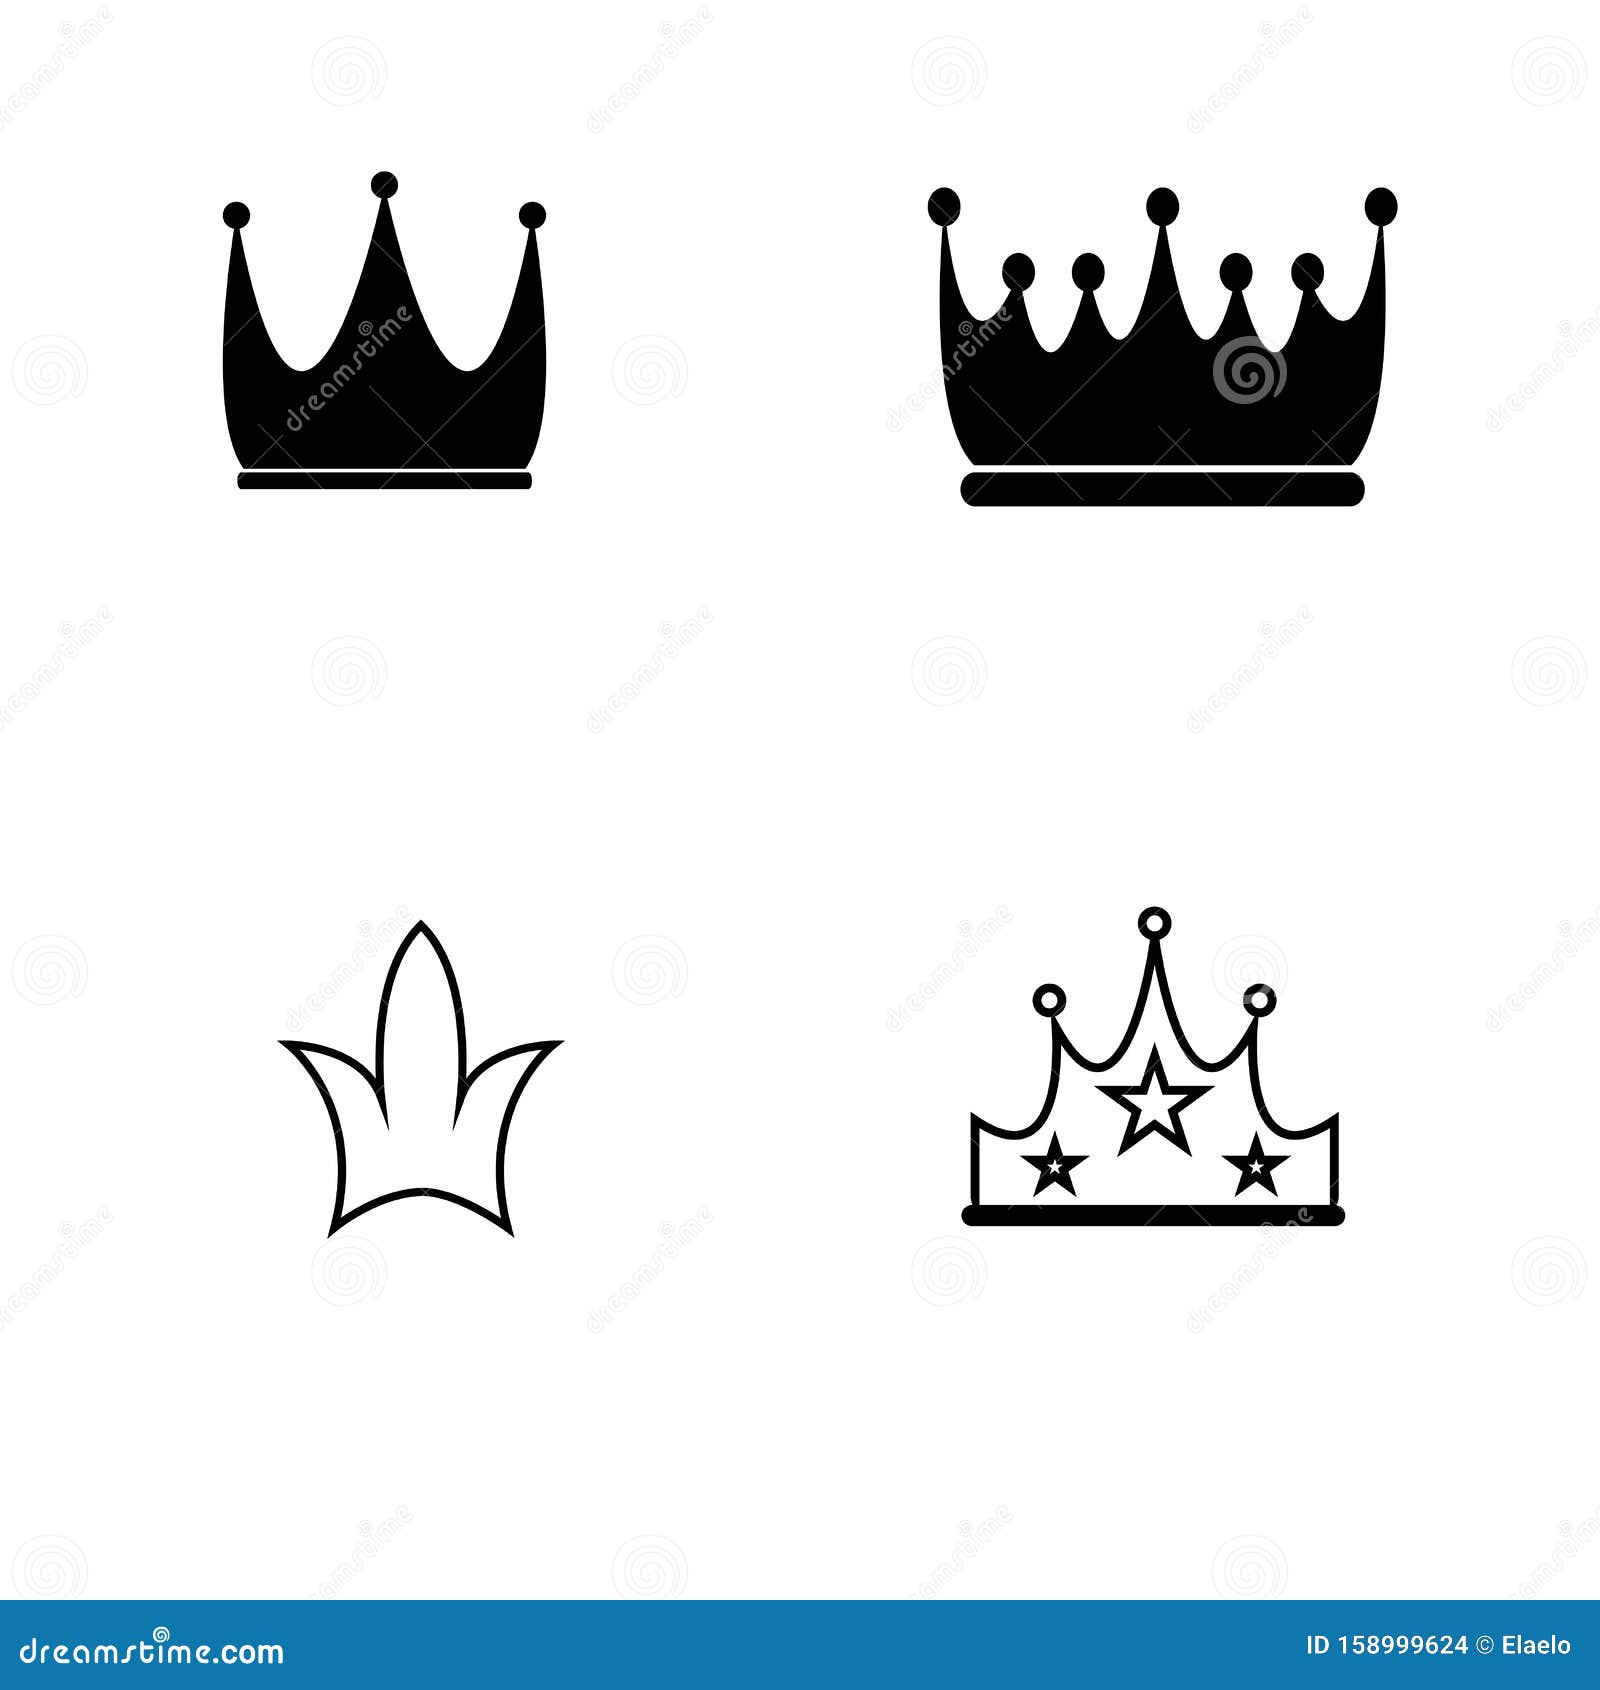 皇冠图标图片素材-编号39322024-图行天下